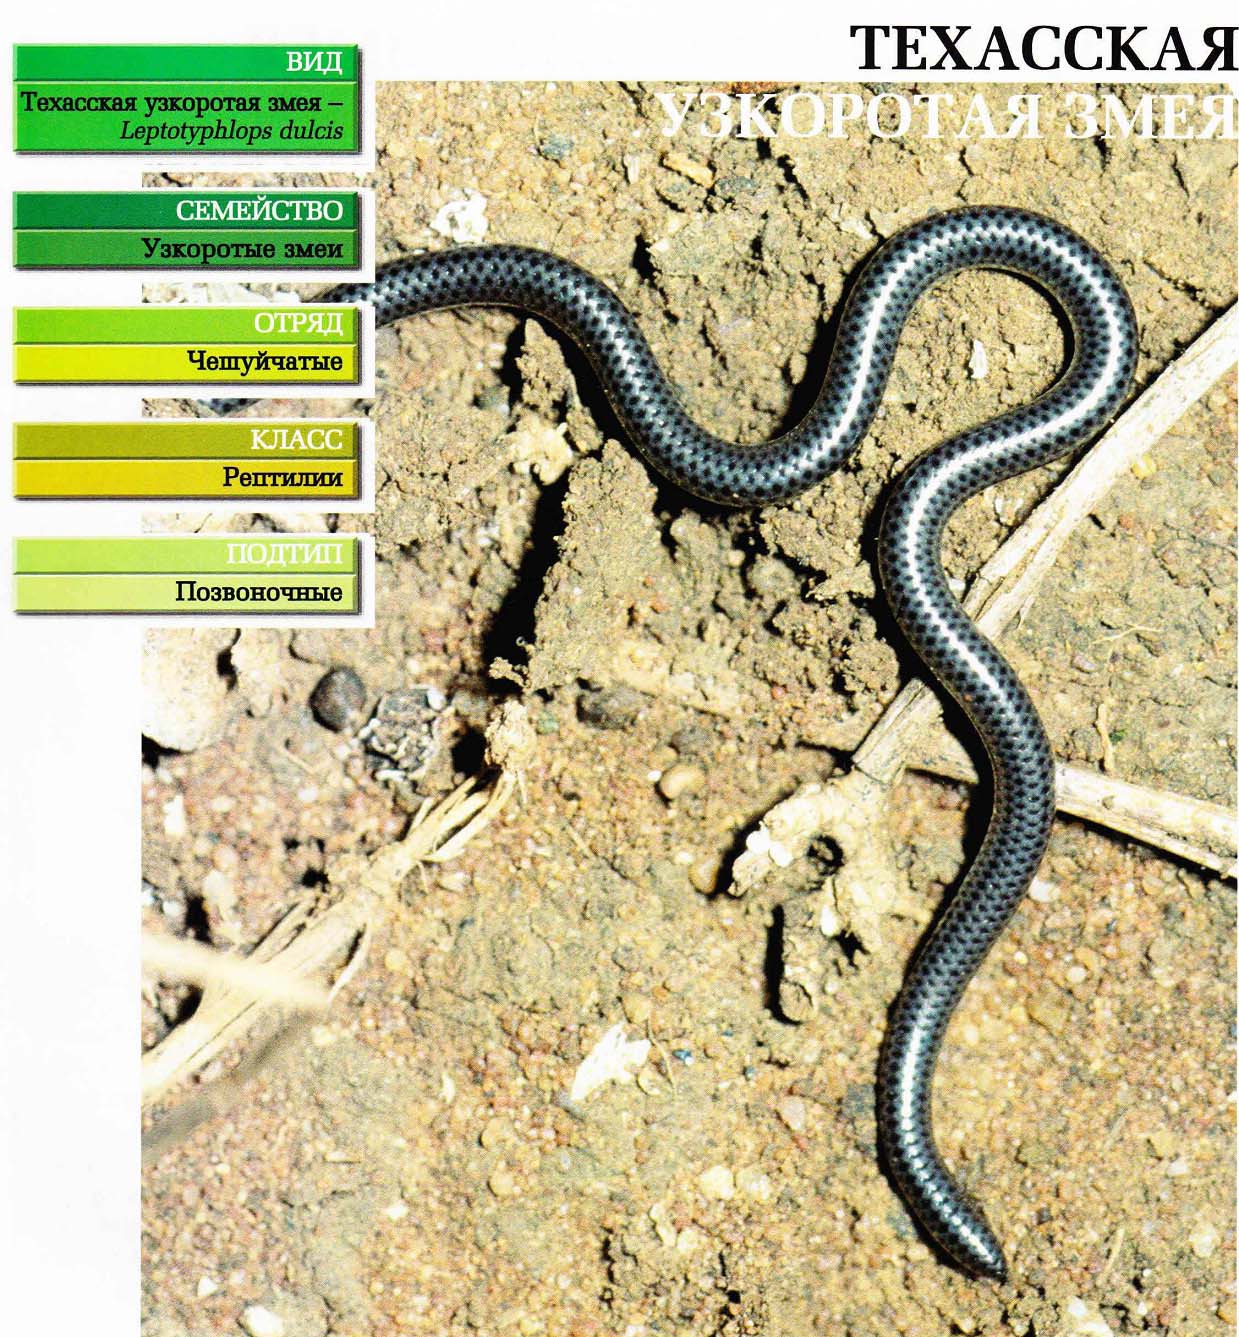 Систематика (научная классификация) змеи узкоротой техасской. Leptotyphlops dulcis.